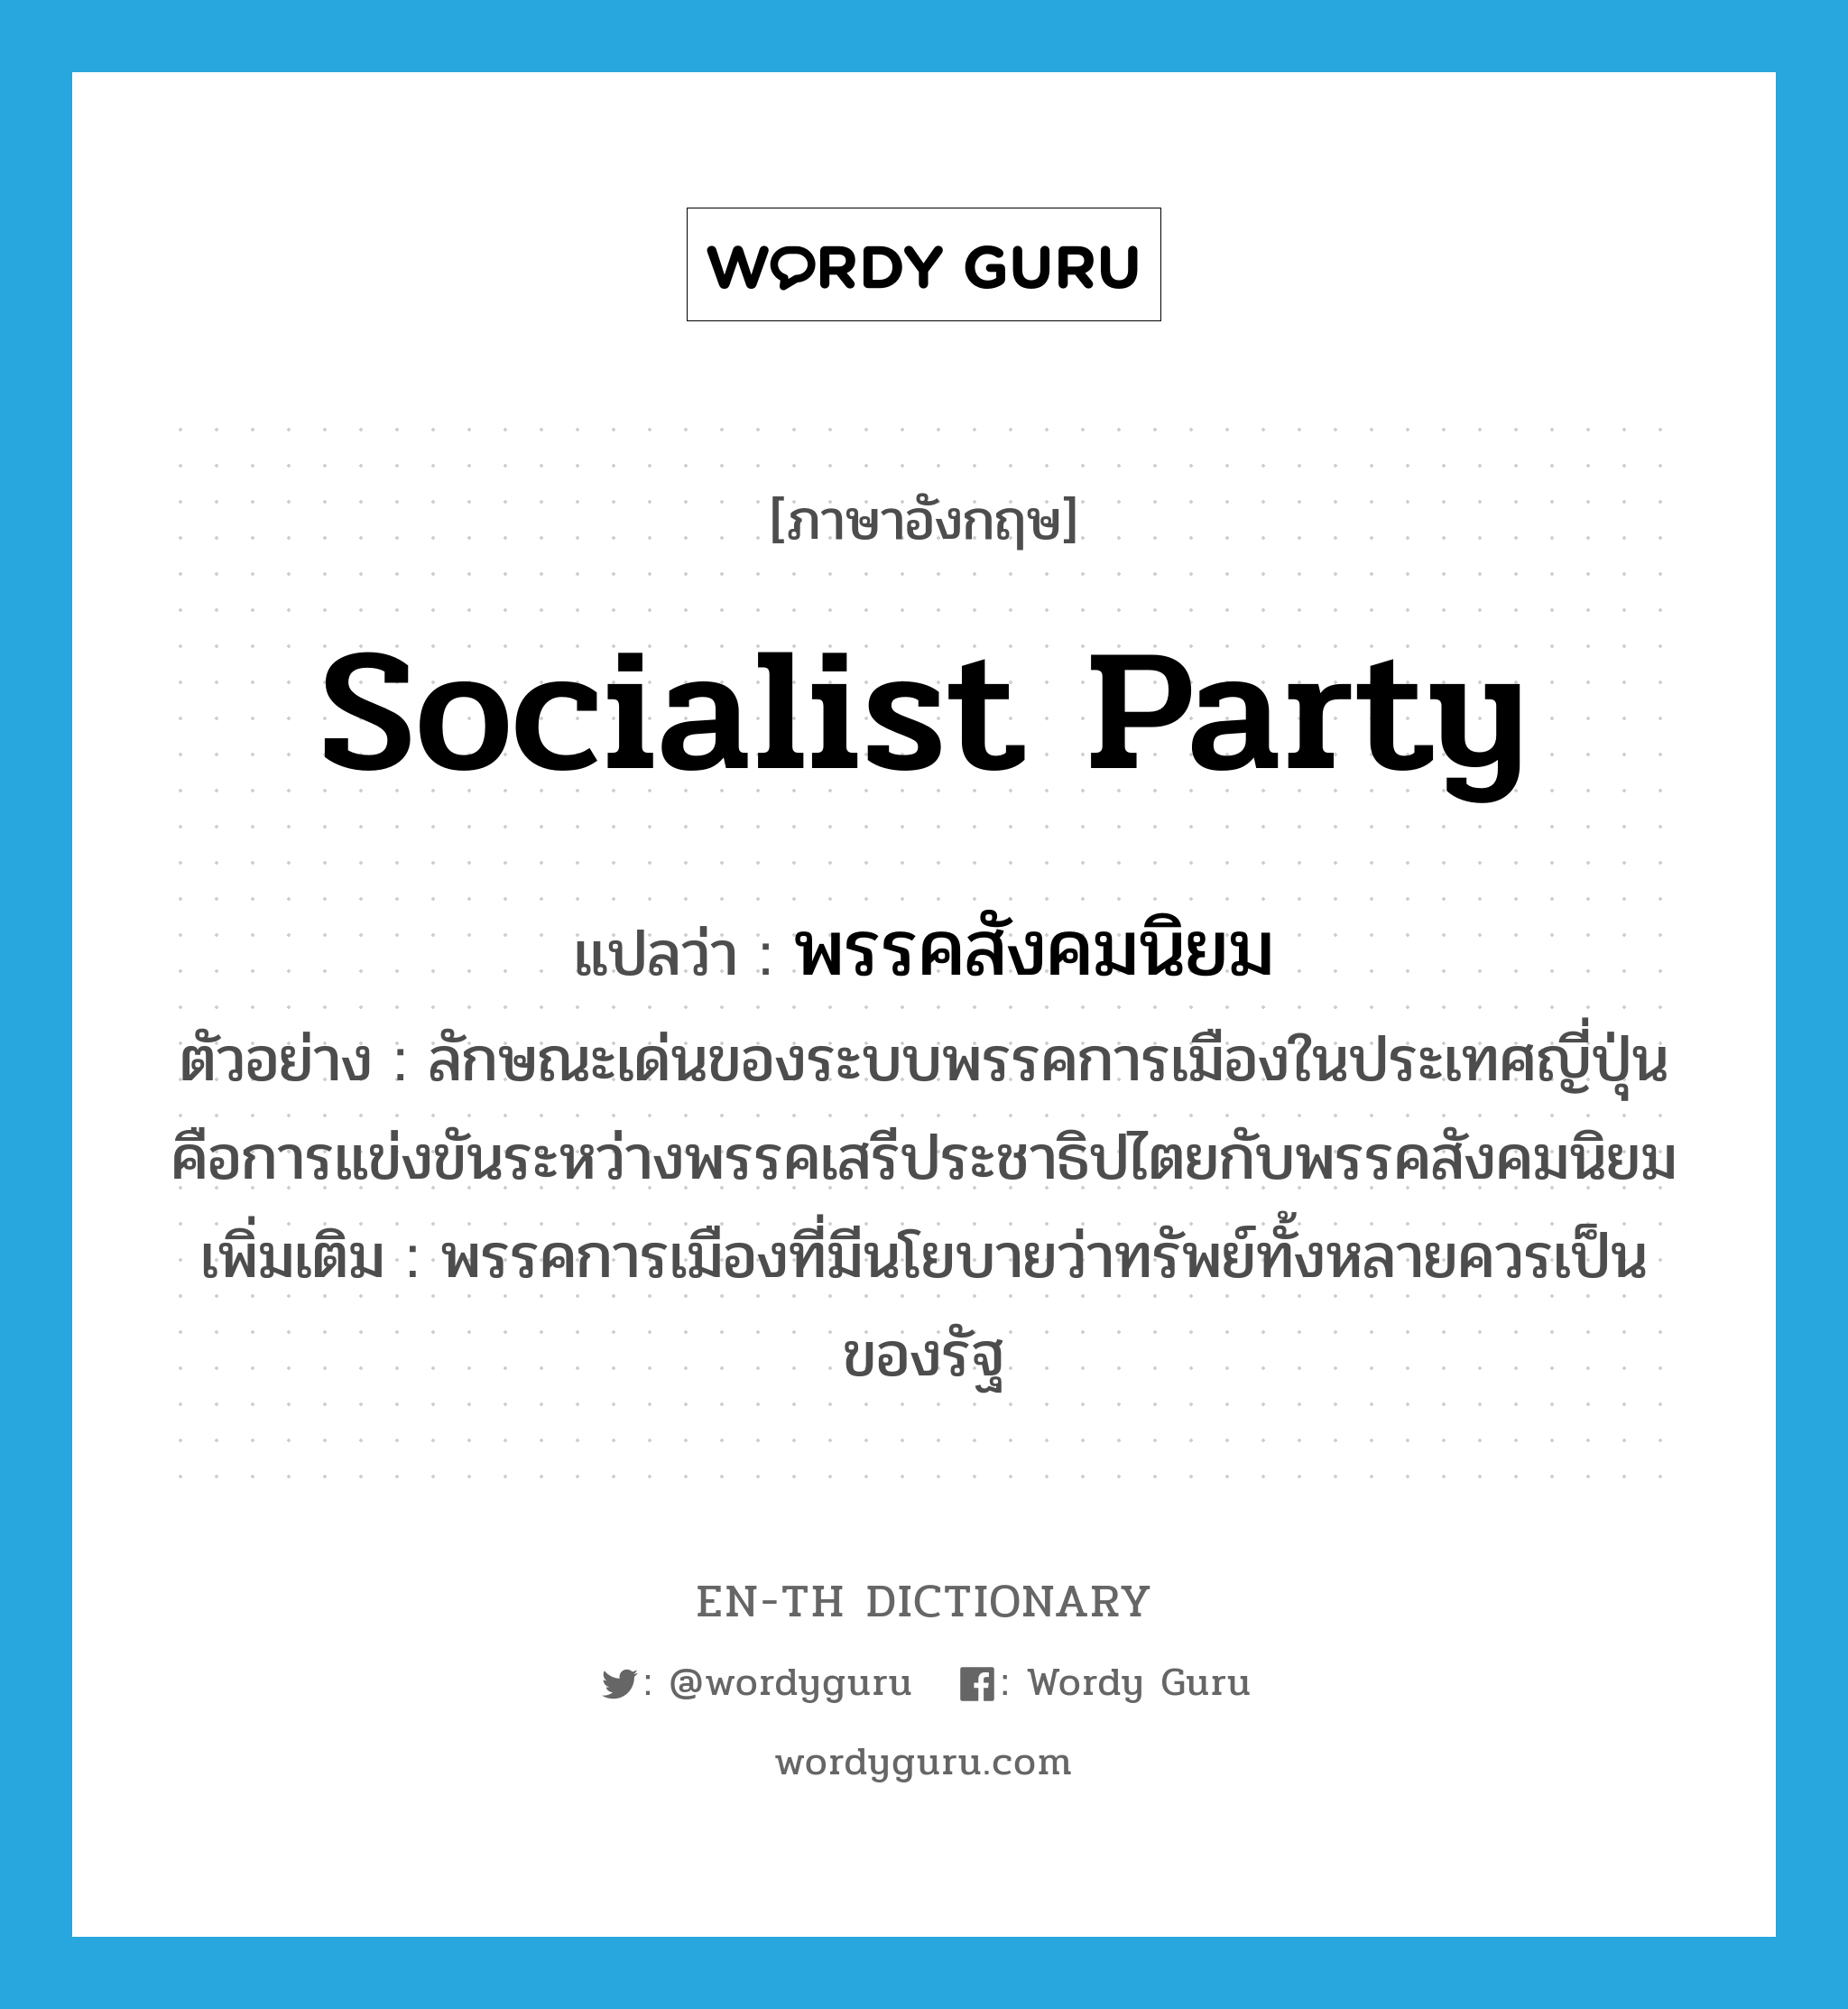 พรรคสังคมนิยม ภาษาอังกฤษ?, คำศัพท์ภาษาอังกฤษ พรรคสังคมนิยม แปลว่า socialist party ประเภท N ตัวอย่าง ลักษณะเด่นของระบบพรรคการเมืองในประเทศญี่ปุ่นคือการแข่งขันระหว่างพรรคเสรีประชาธิปไตยกับพรรคสังคมนิยม เพิ่มเติม พรรคการเมืองที่มีนโยบายว่าทรัพย์ทั้งหลายควรเป็นของรัฐ หมวด N